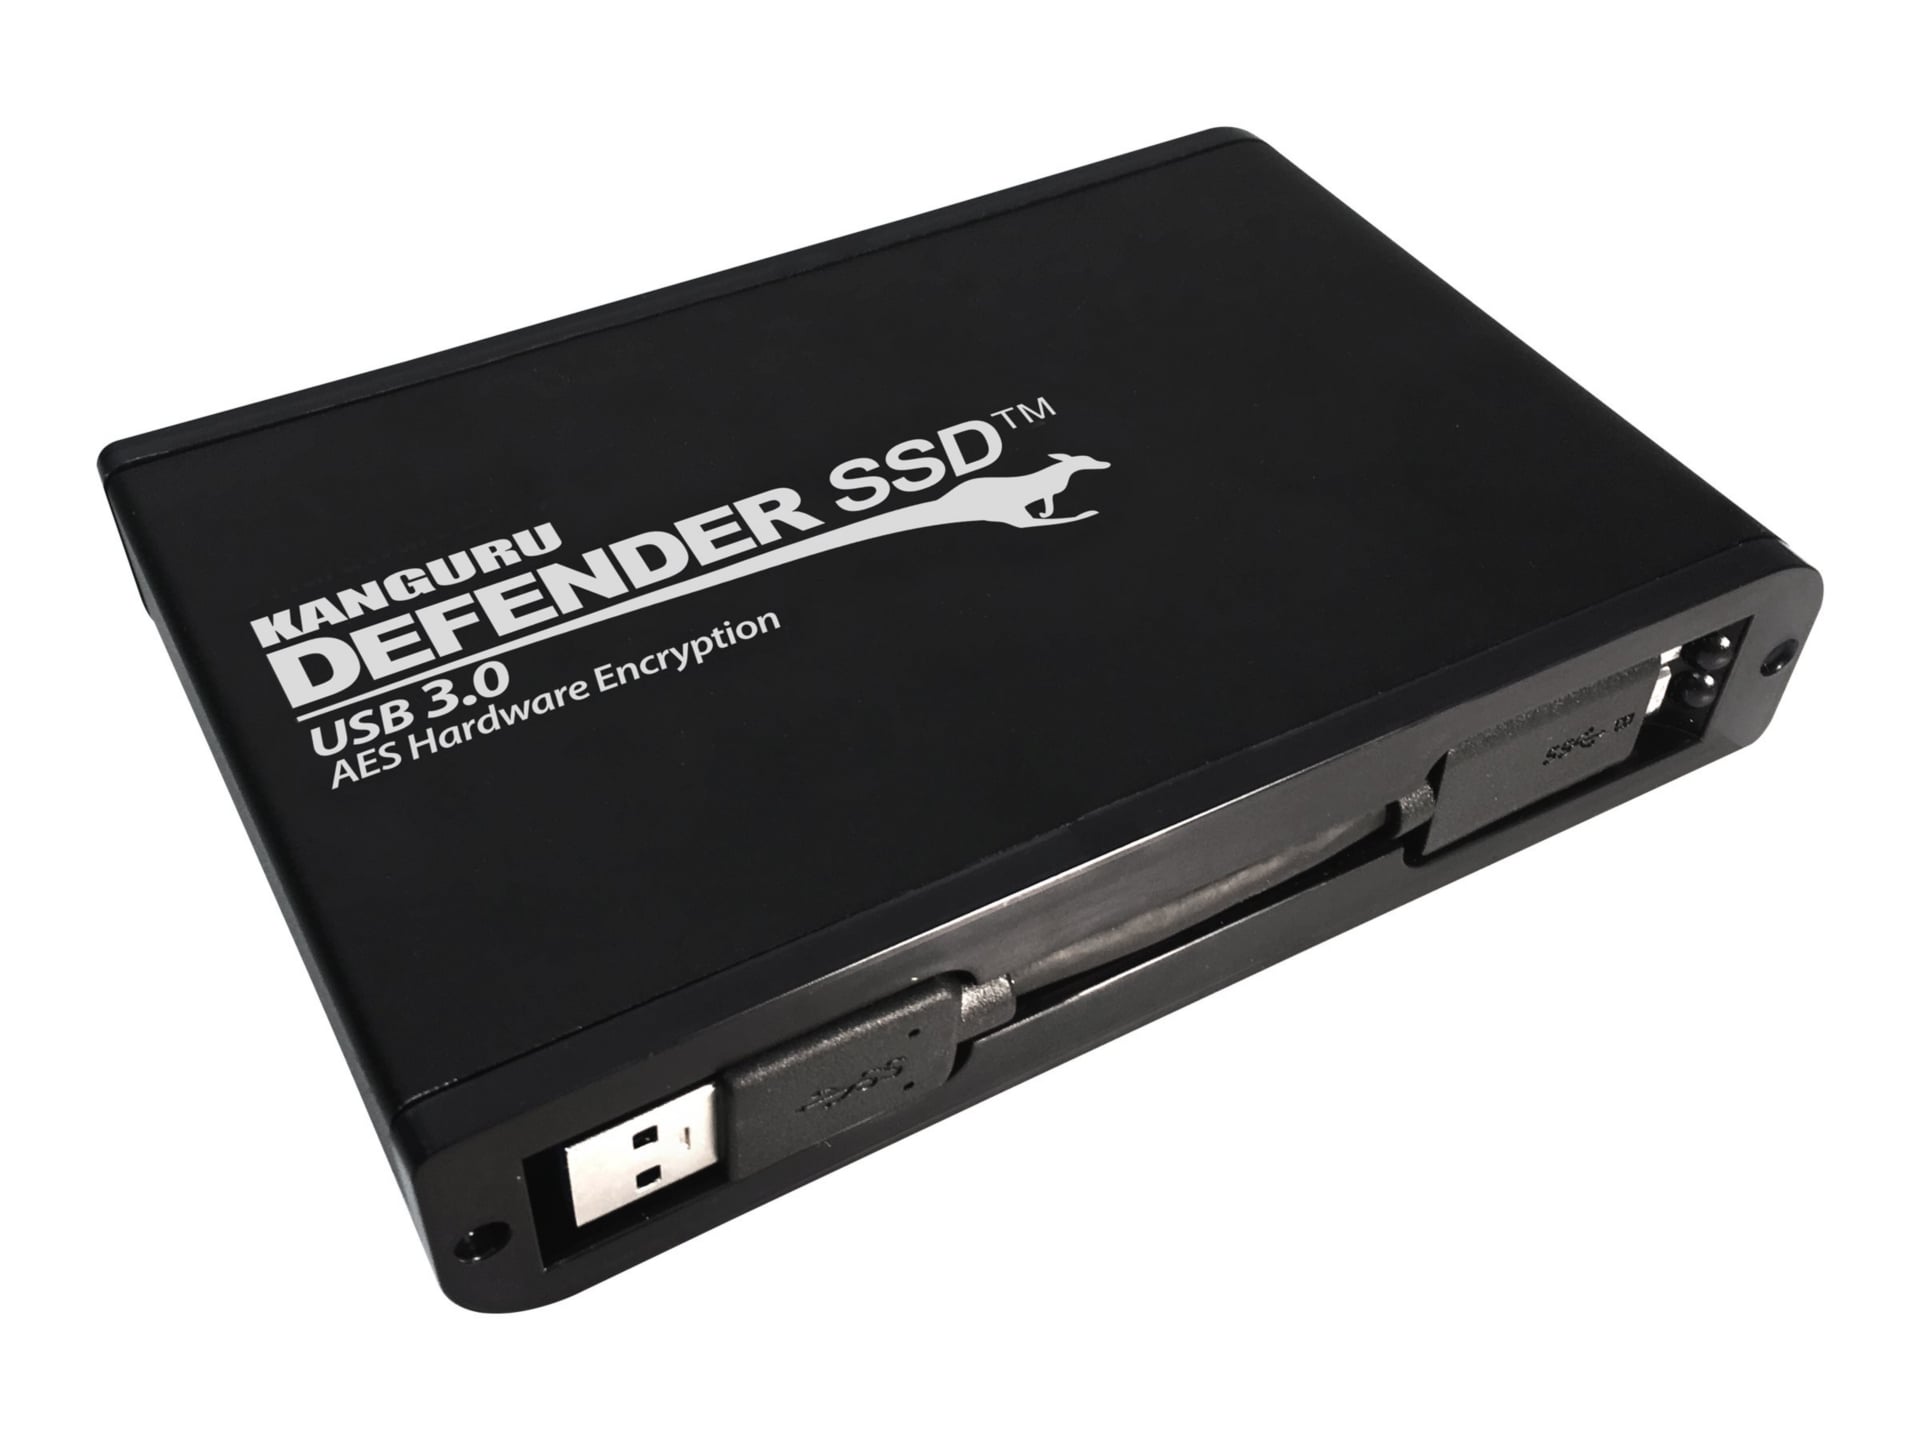 Kanguru Defender SSD 35 - SSD - 4 TB - USB 3.0 - TAA Compliant